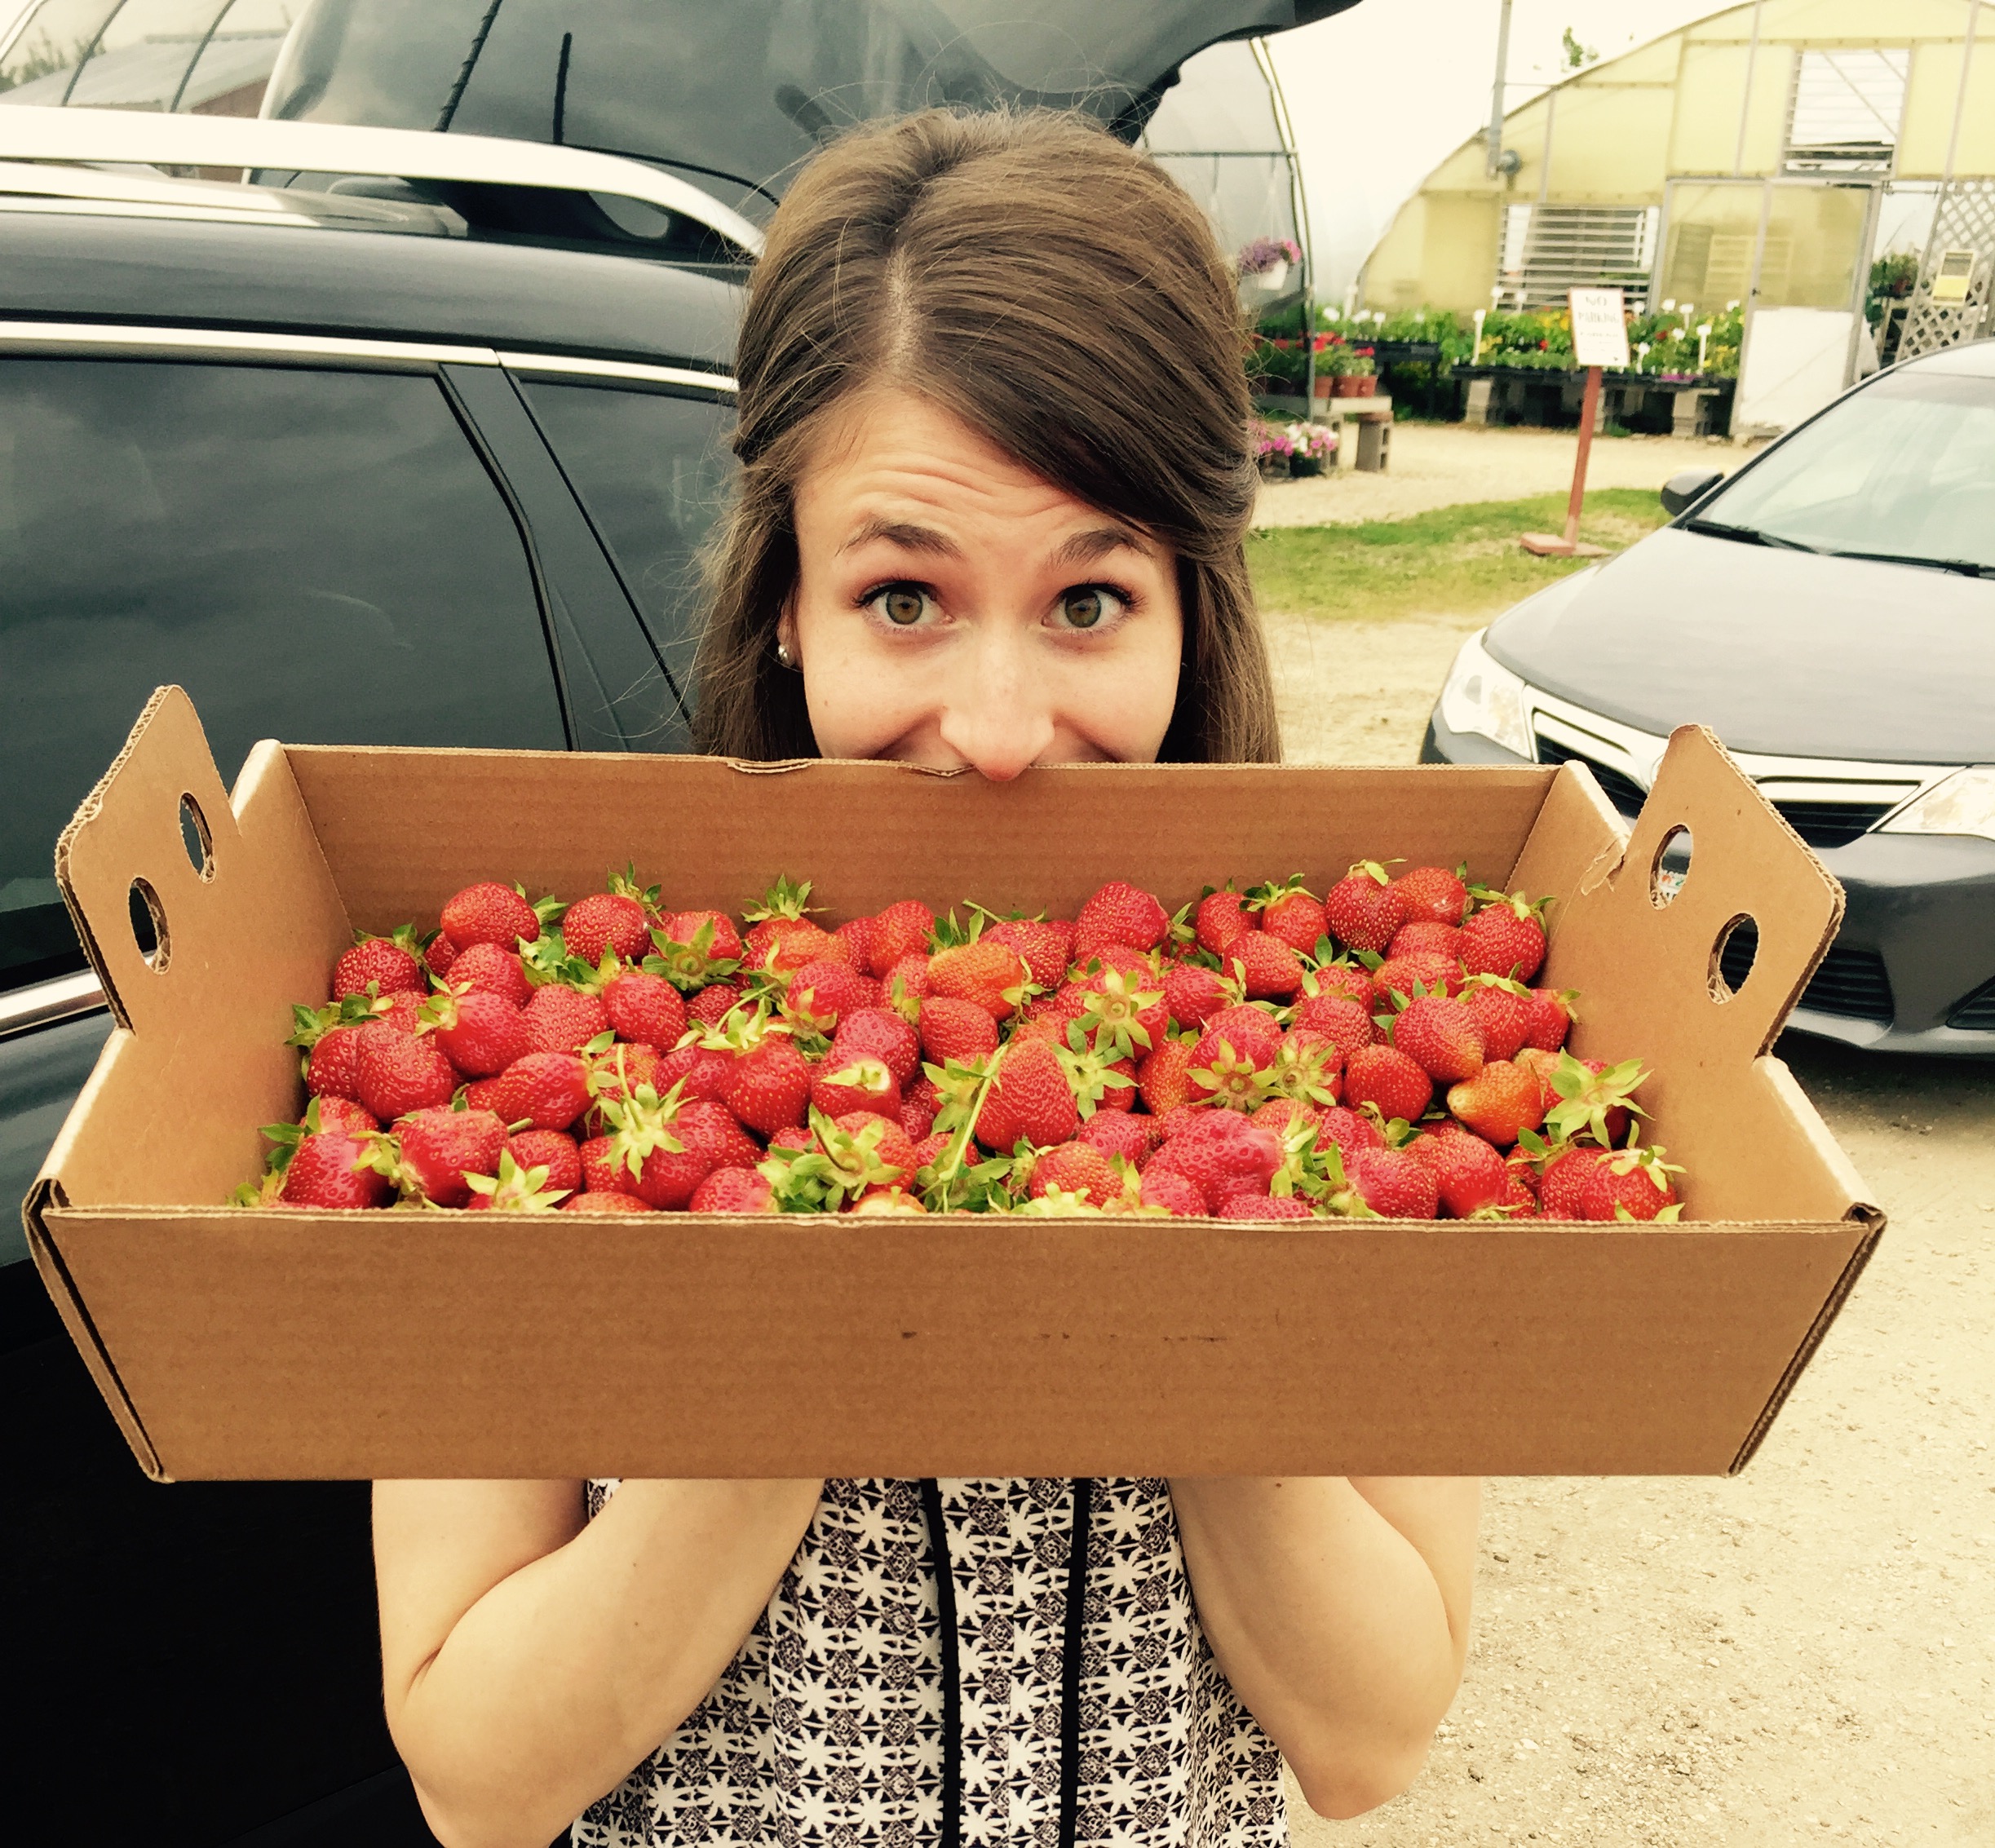 Mmmmm, strawberries! Freshly picked with our Nana.